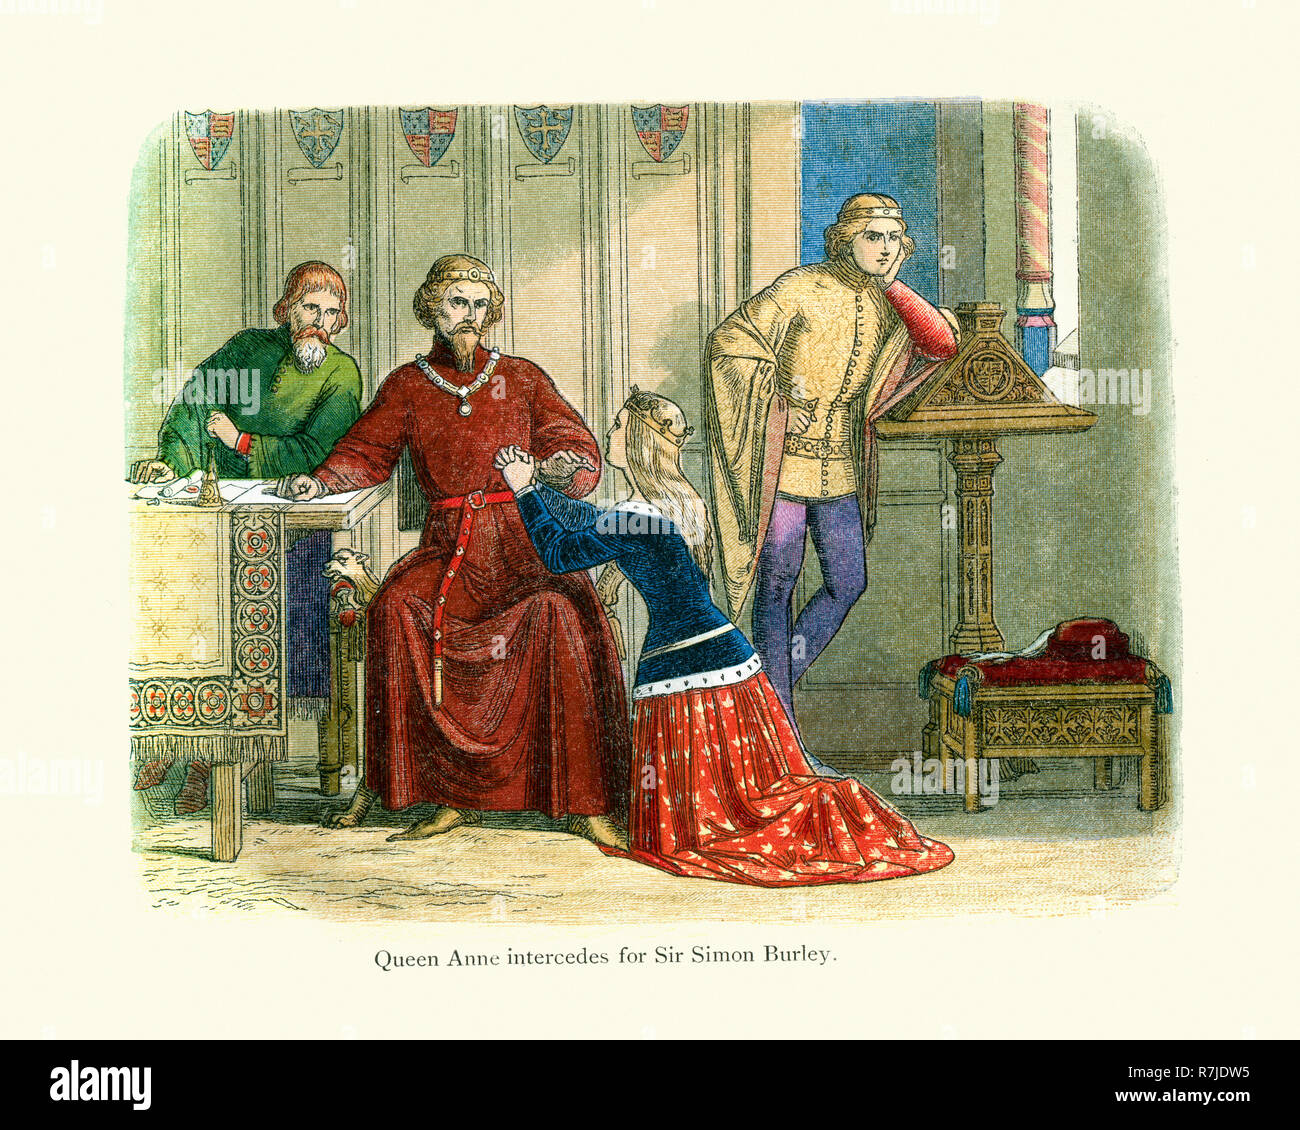 La reine Anne intercède pour Sir Simon Burley à Gloucester et Arundel qui reste sourd à toutes les supplications. Le roi Richard II avait involontairement donc tr Banque D'Images